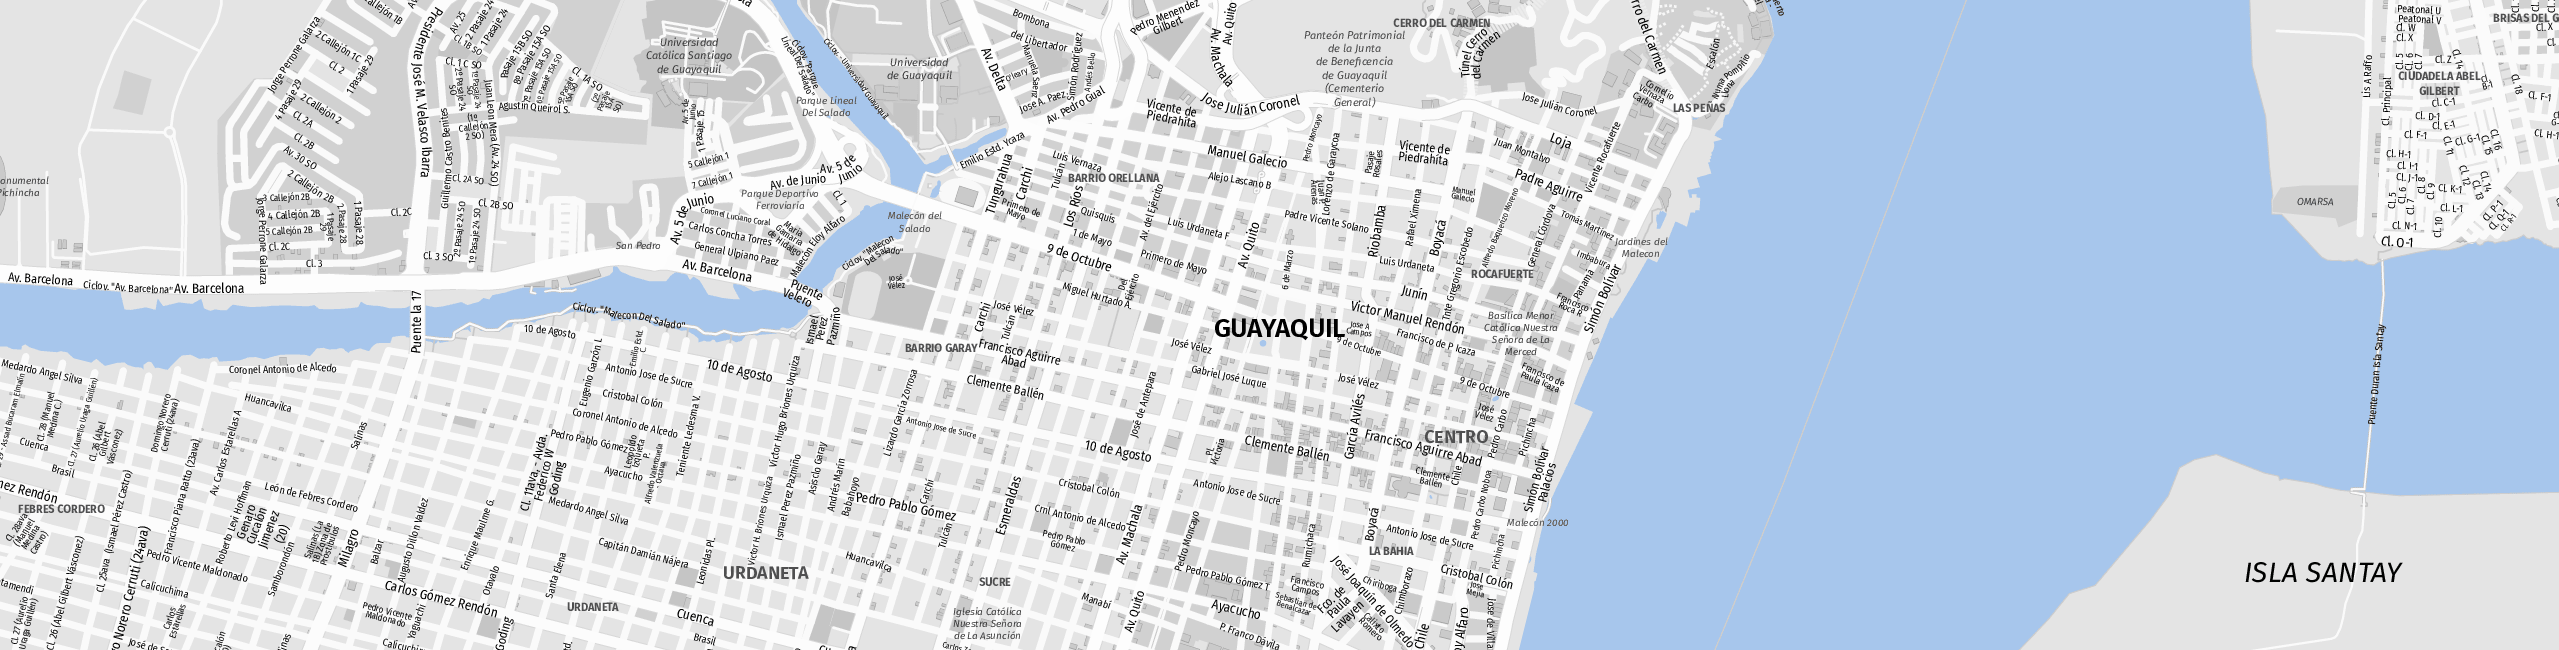 Stadtplan Guayaquil zum Downloaden.